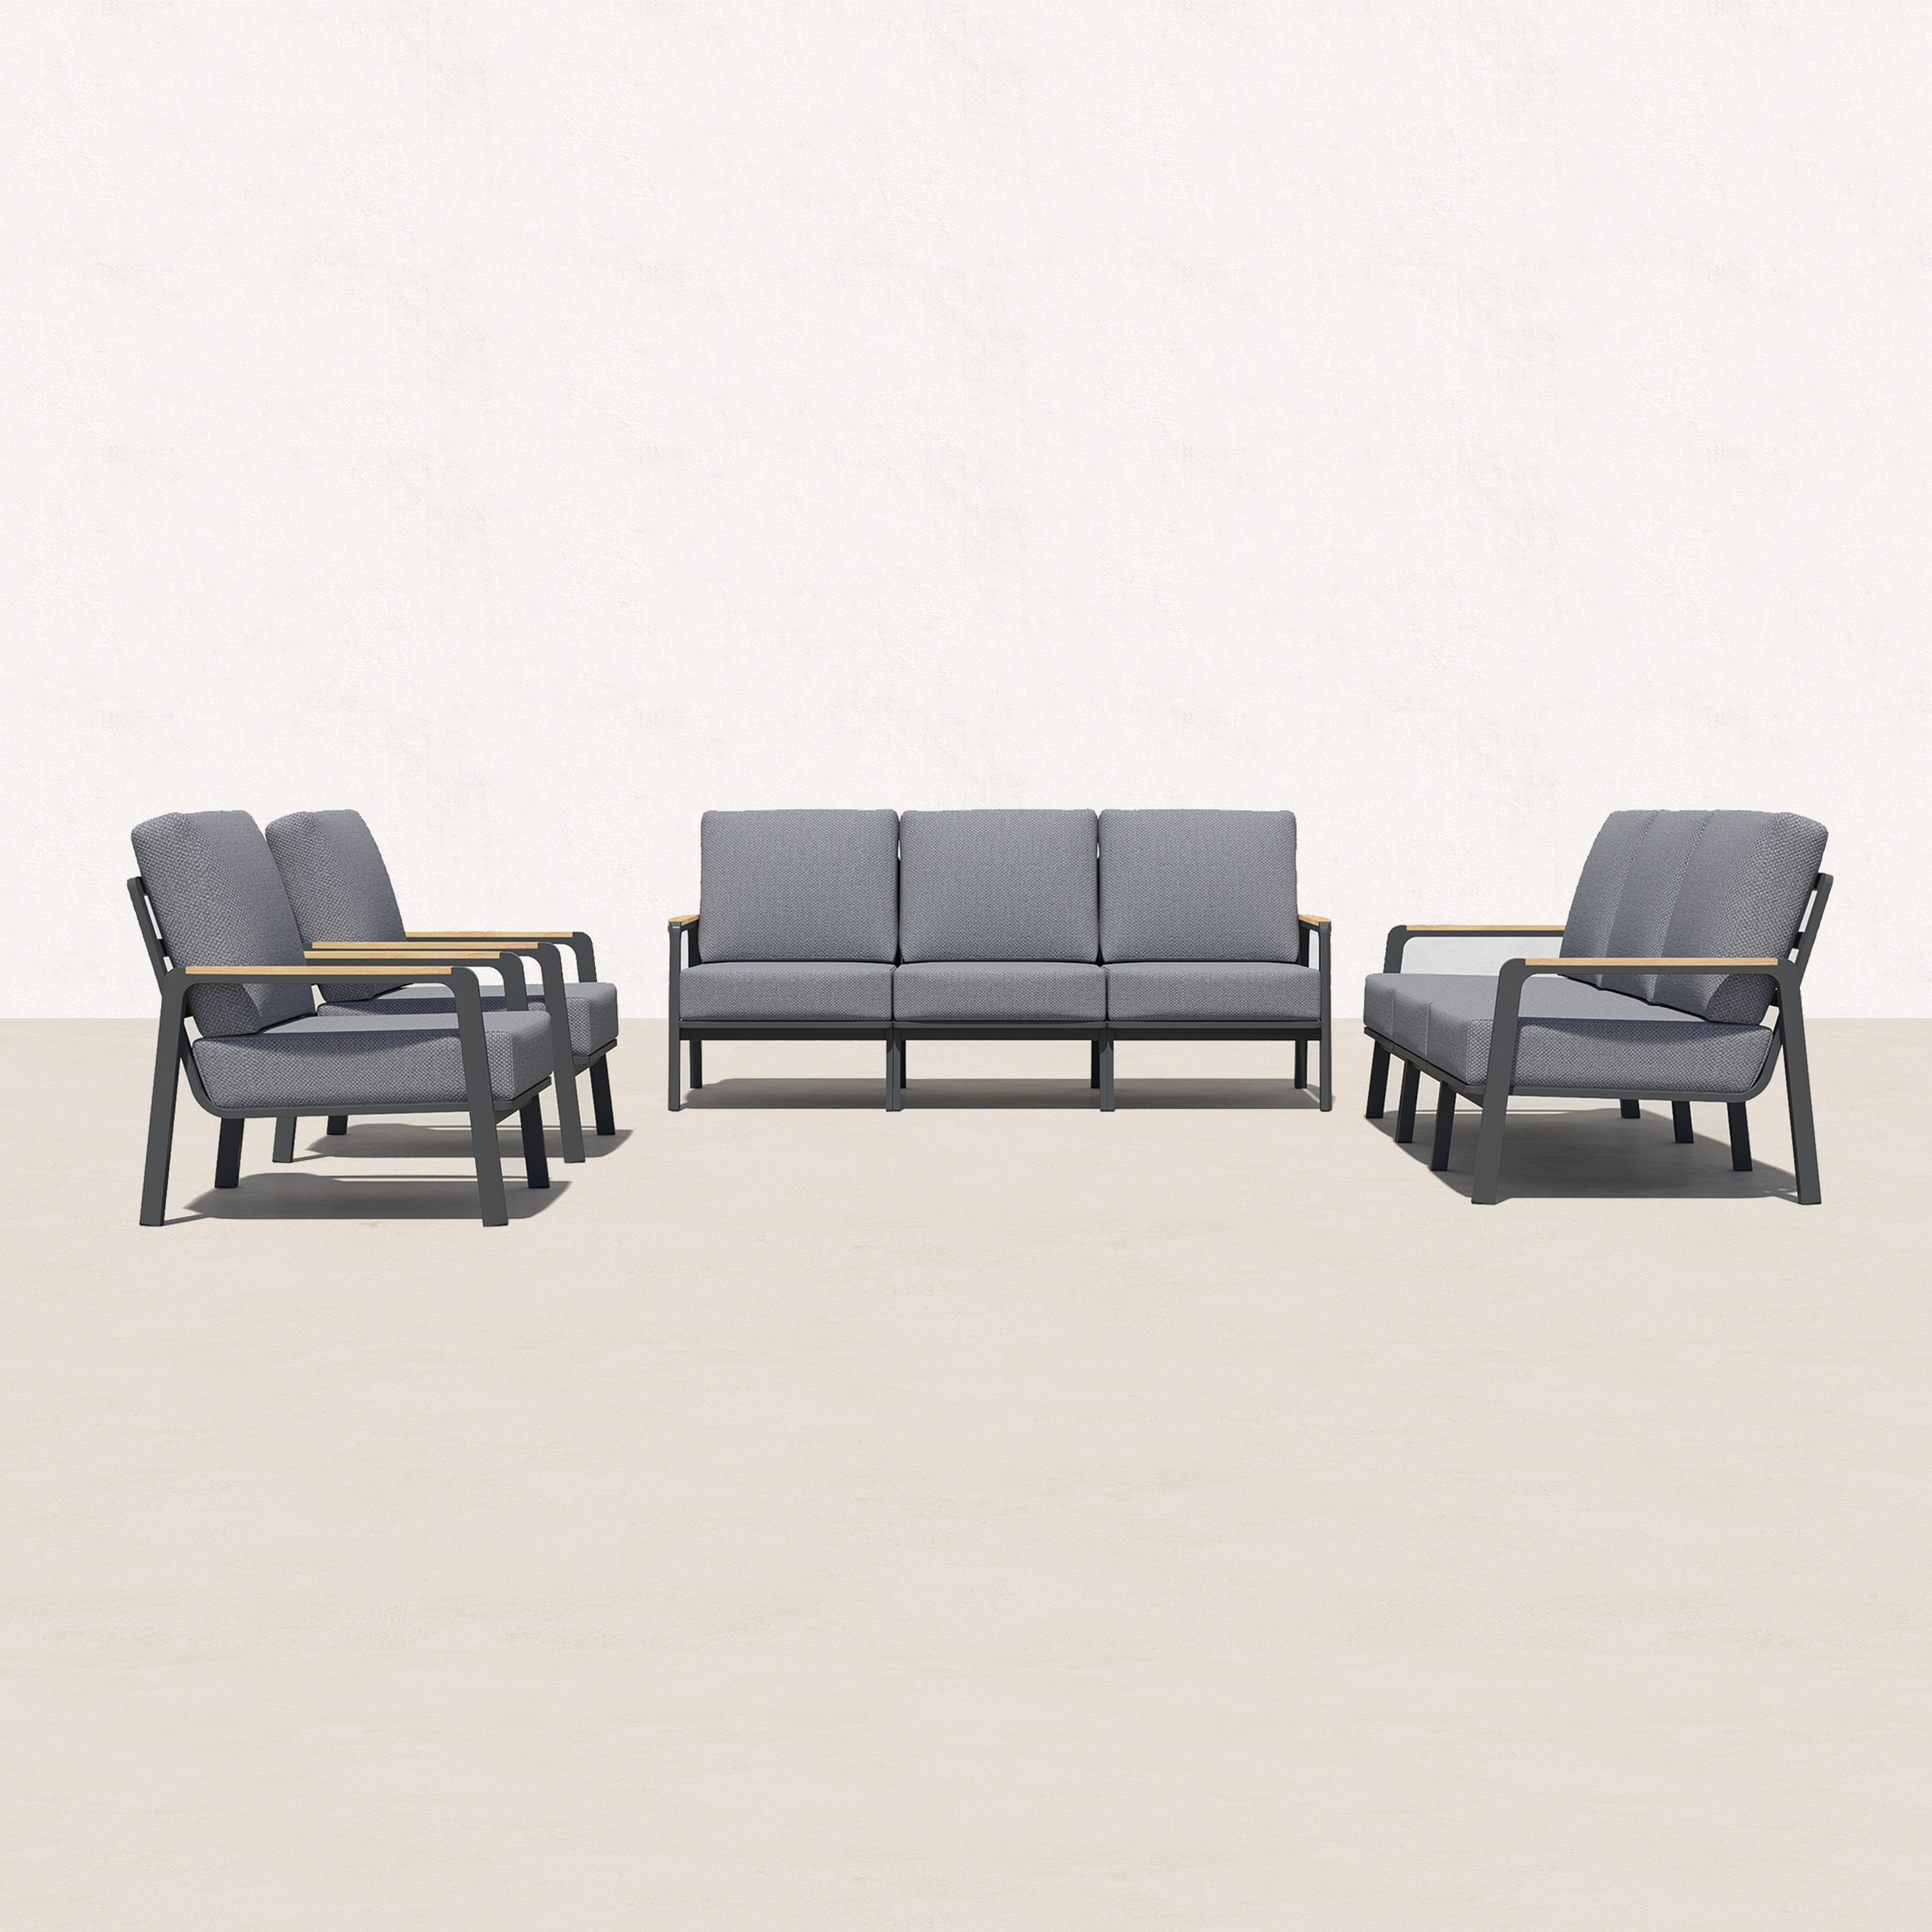 Orion Teak Outdoor Seating Group - 8 Seat-Baeryon Furniture